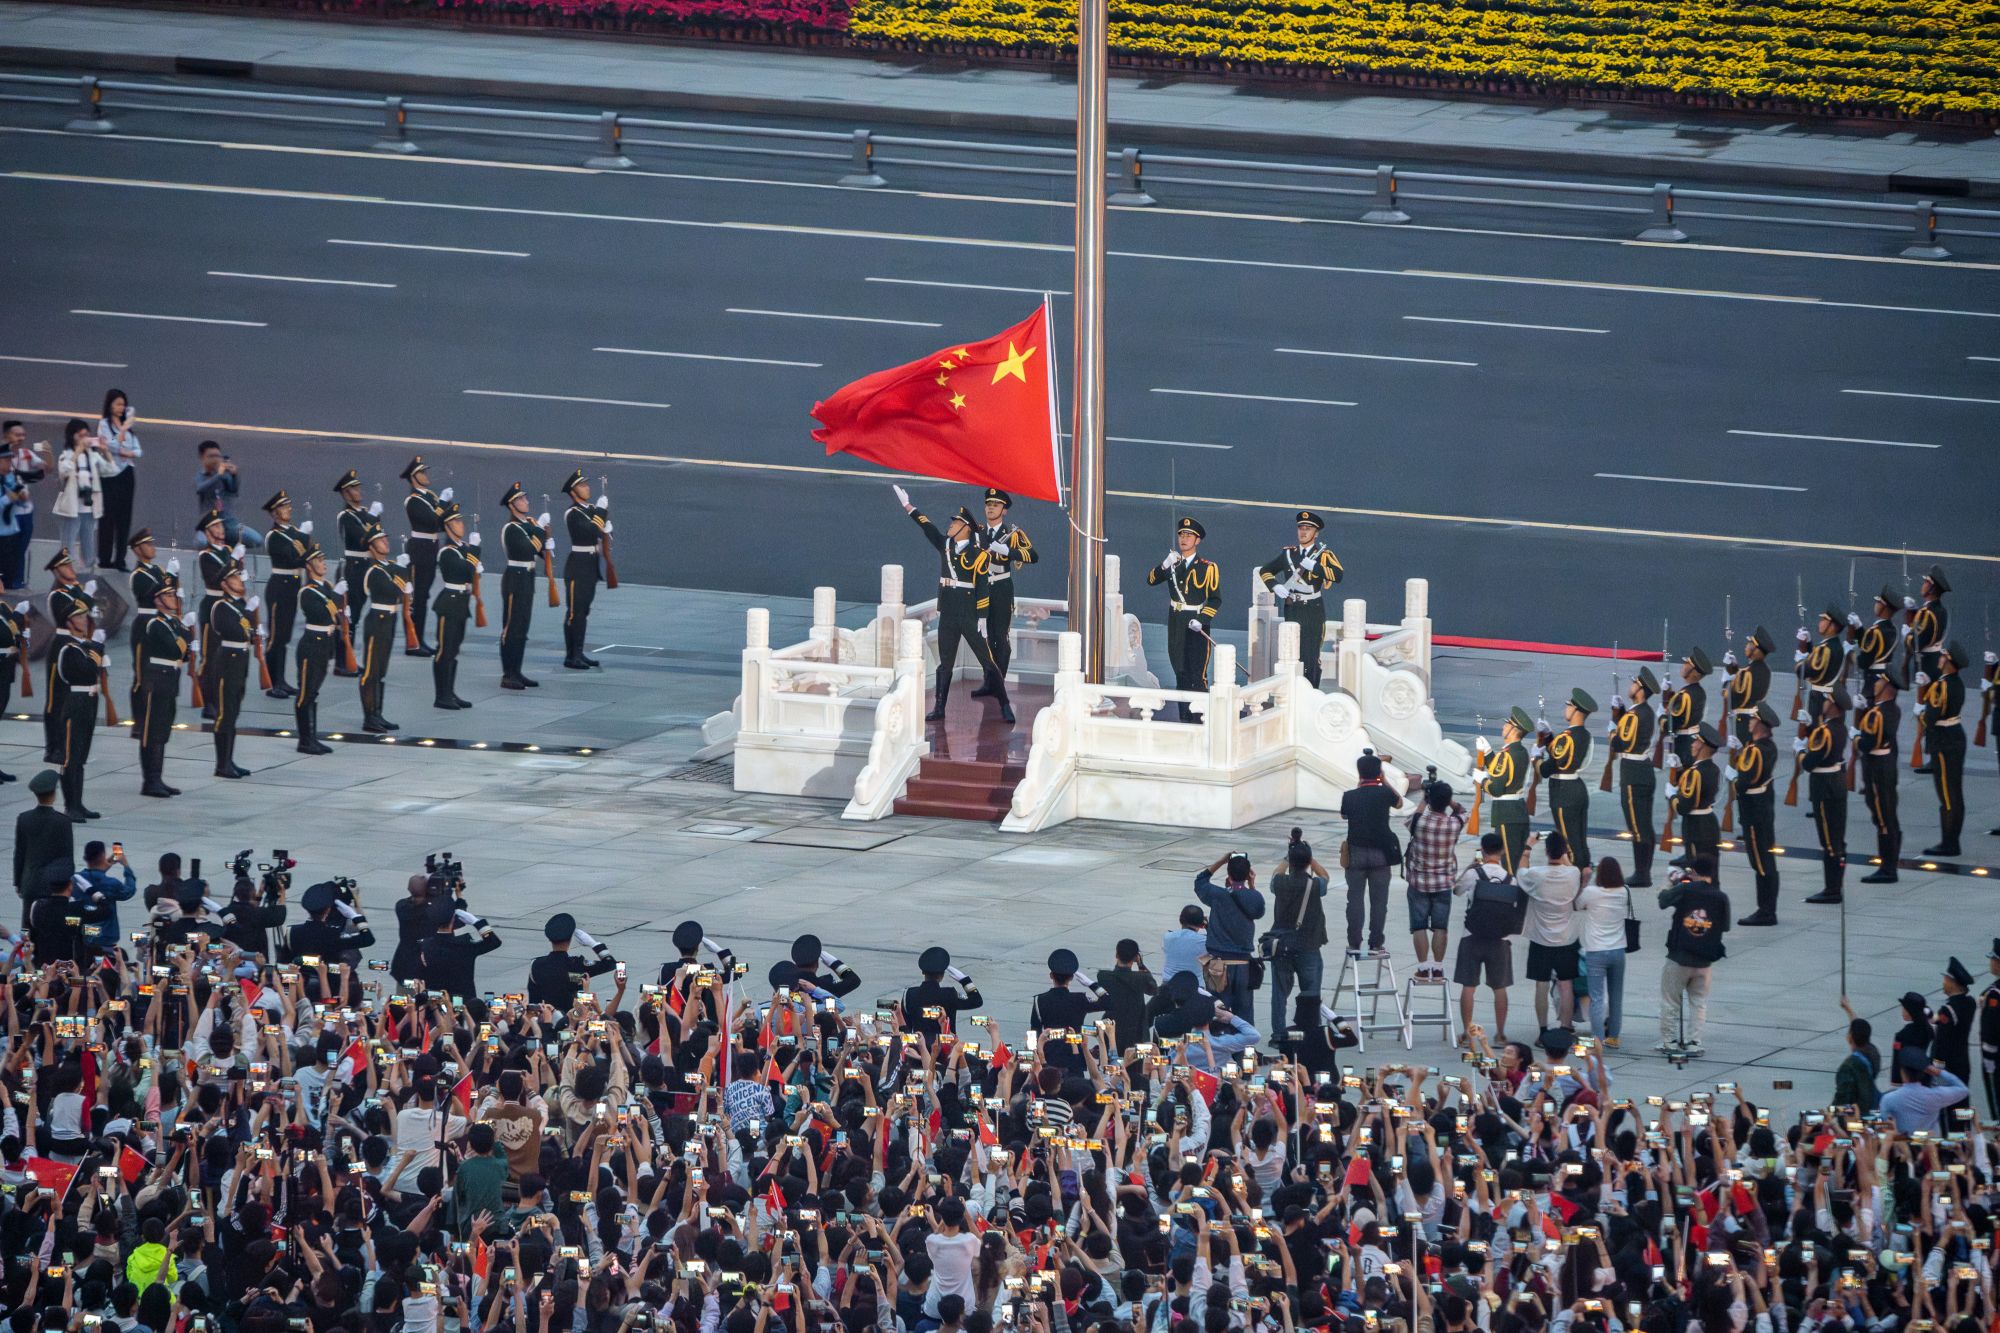 国庆升旗仪式照片图片